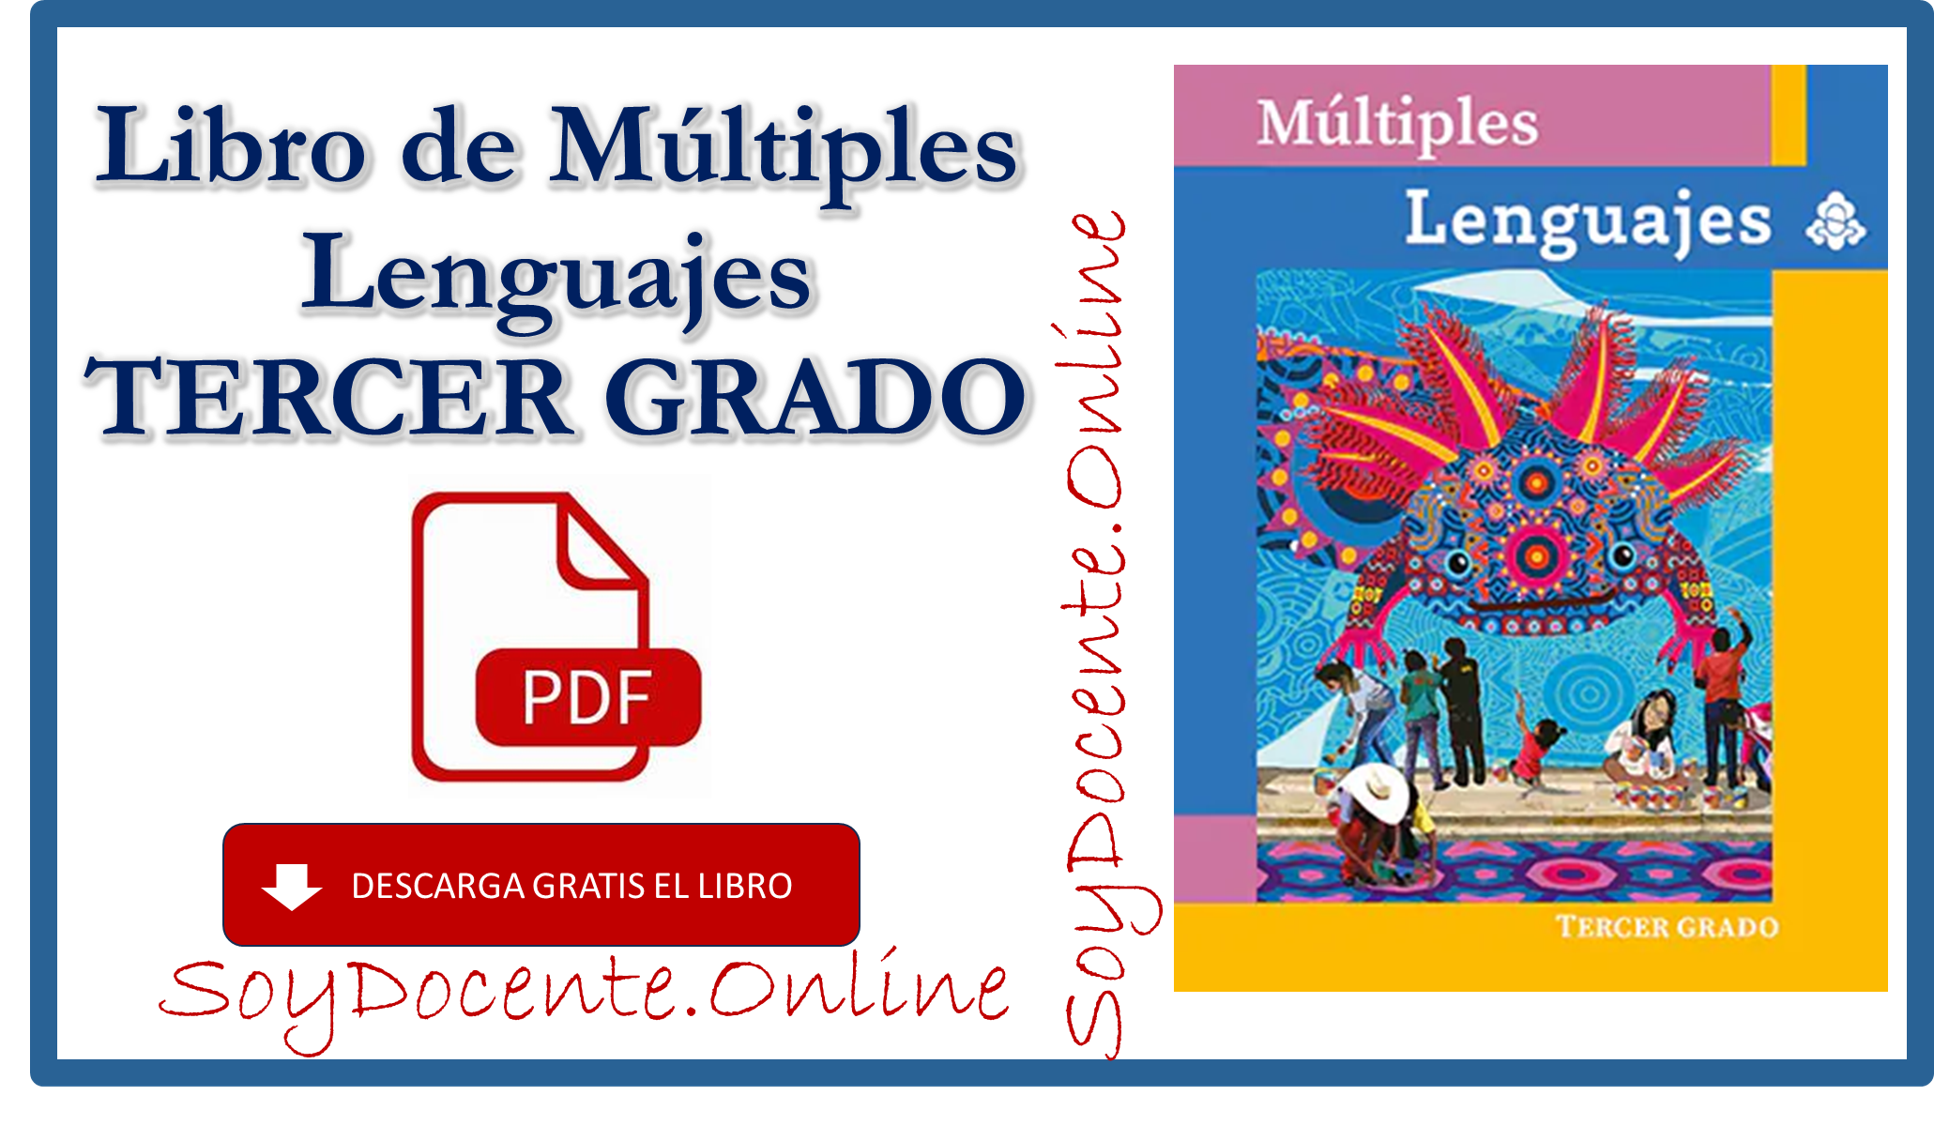 Descarga gratis el Libro de Múltiples lenguajes tercer grado de Primaria obra de la SEP, distribuido por la CONALITEG, PDF.